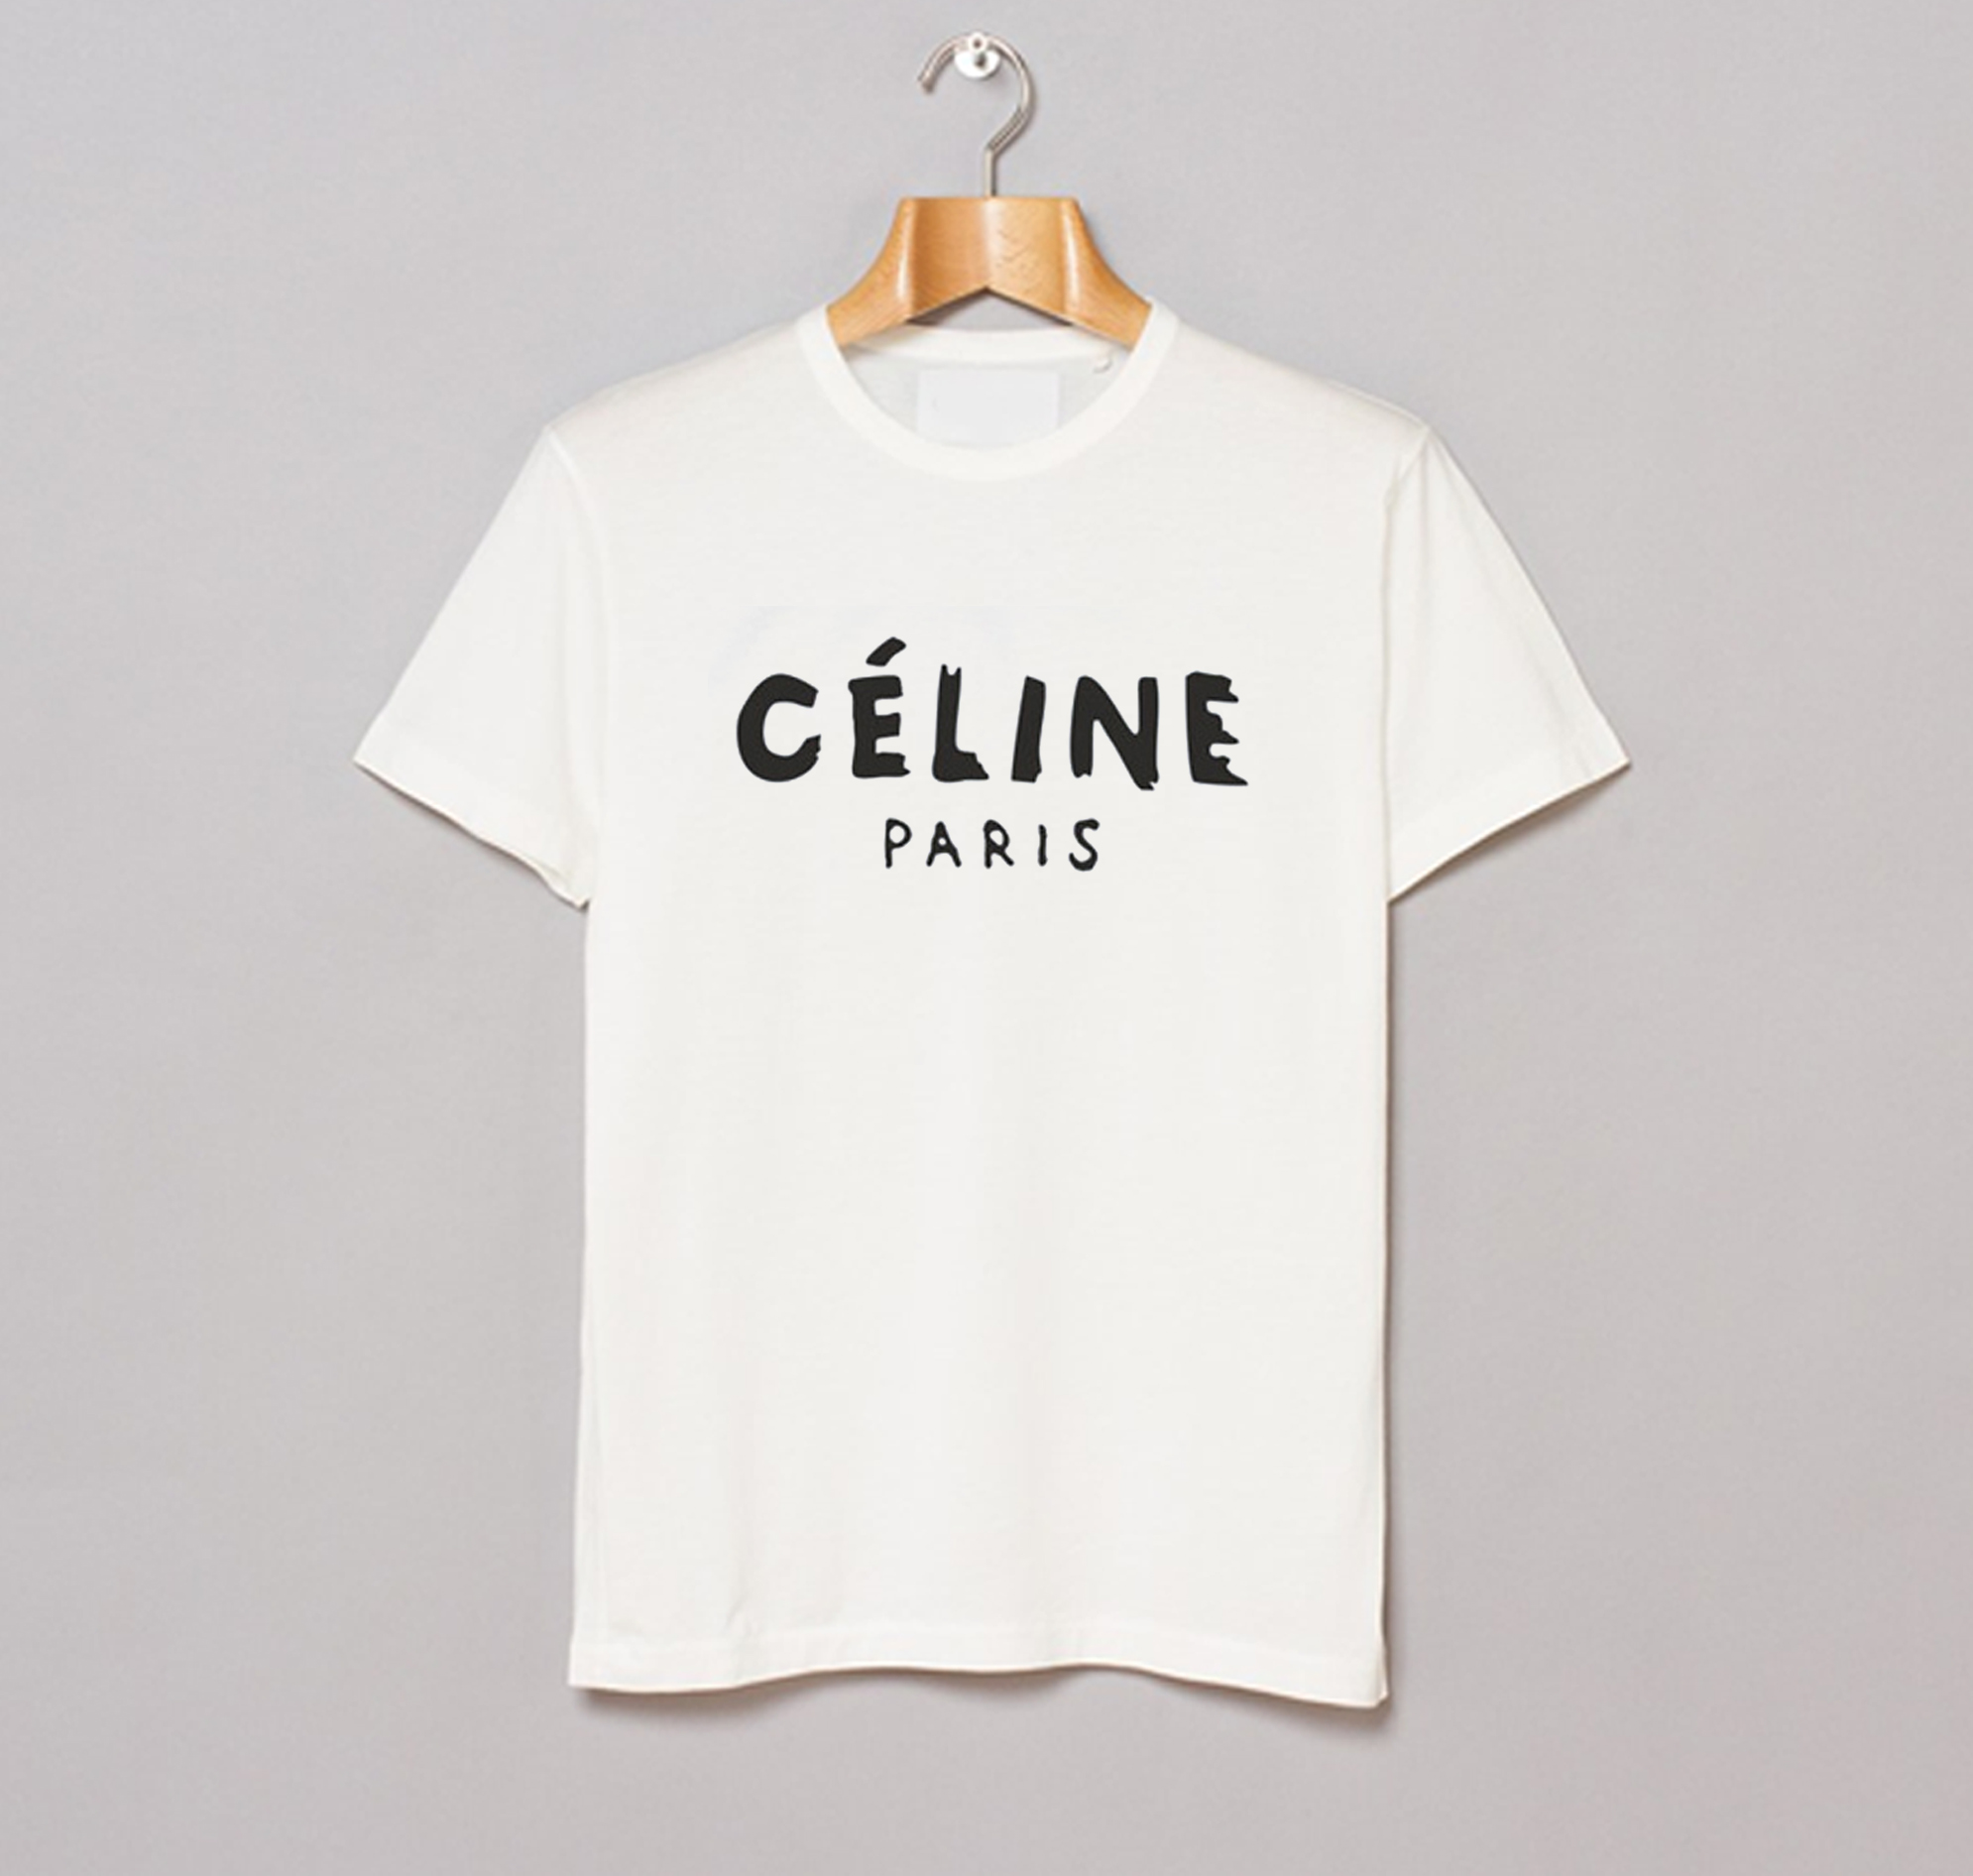 Celine t shirt uk